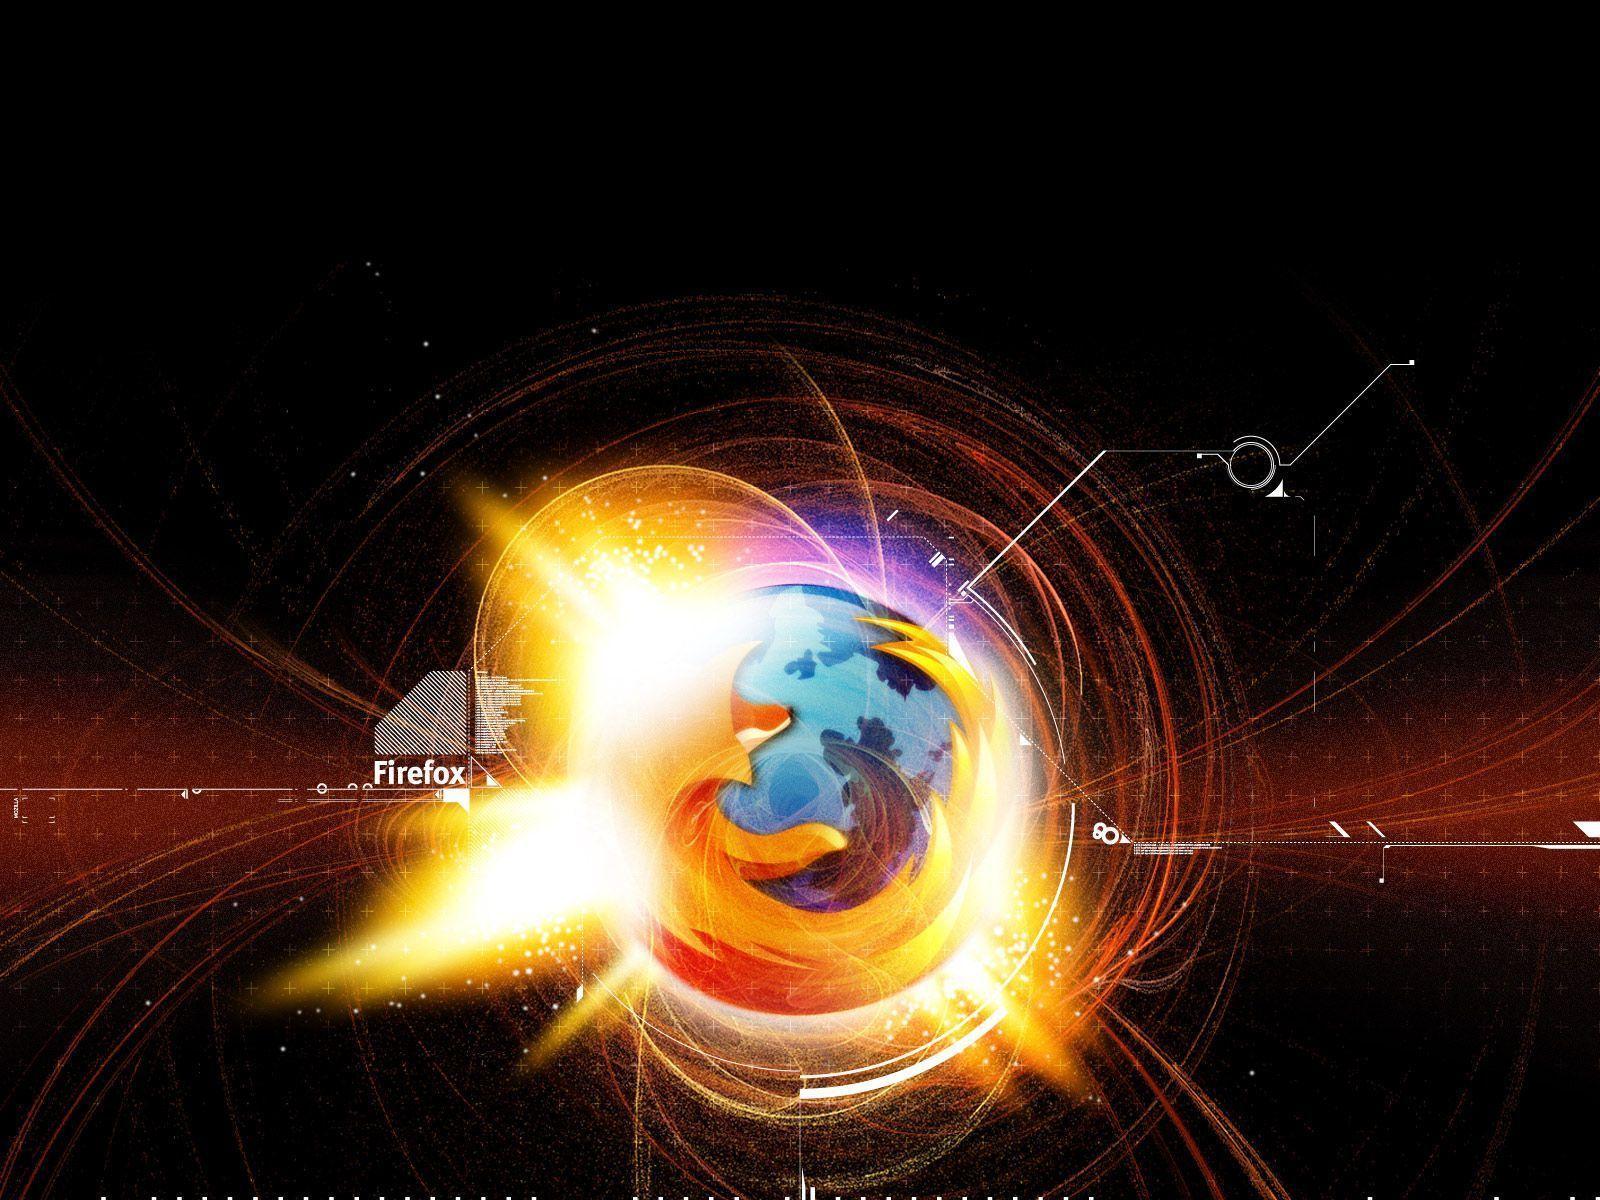 Galaxy Mozilla Firefox Image Background Wallpaper. AWS HD